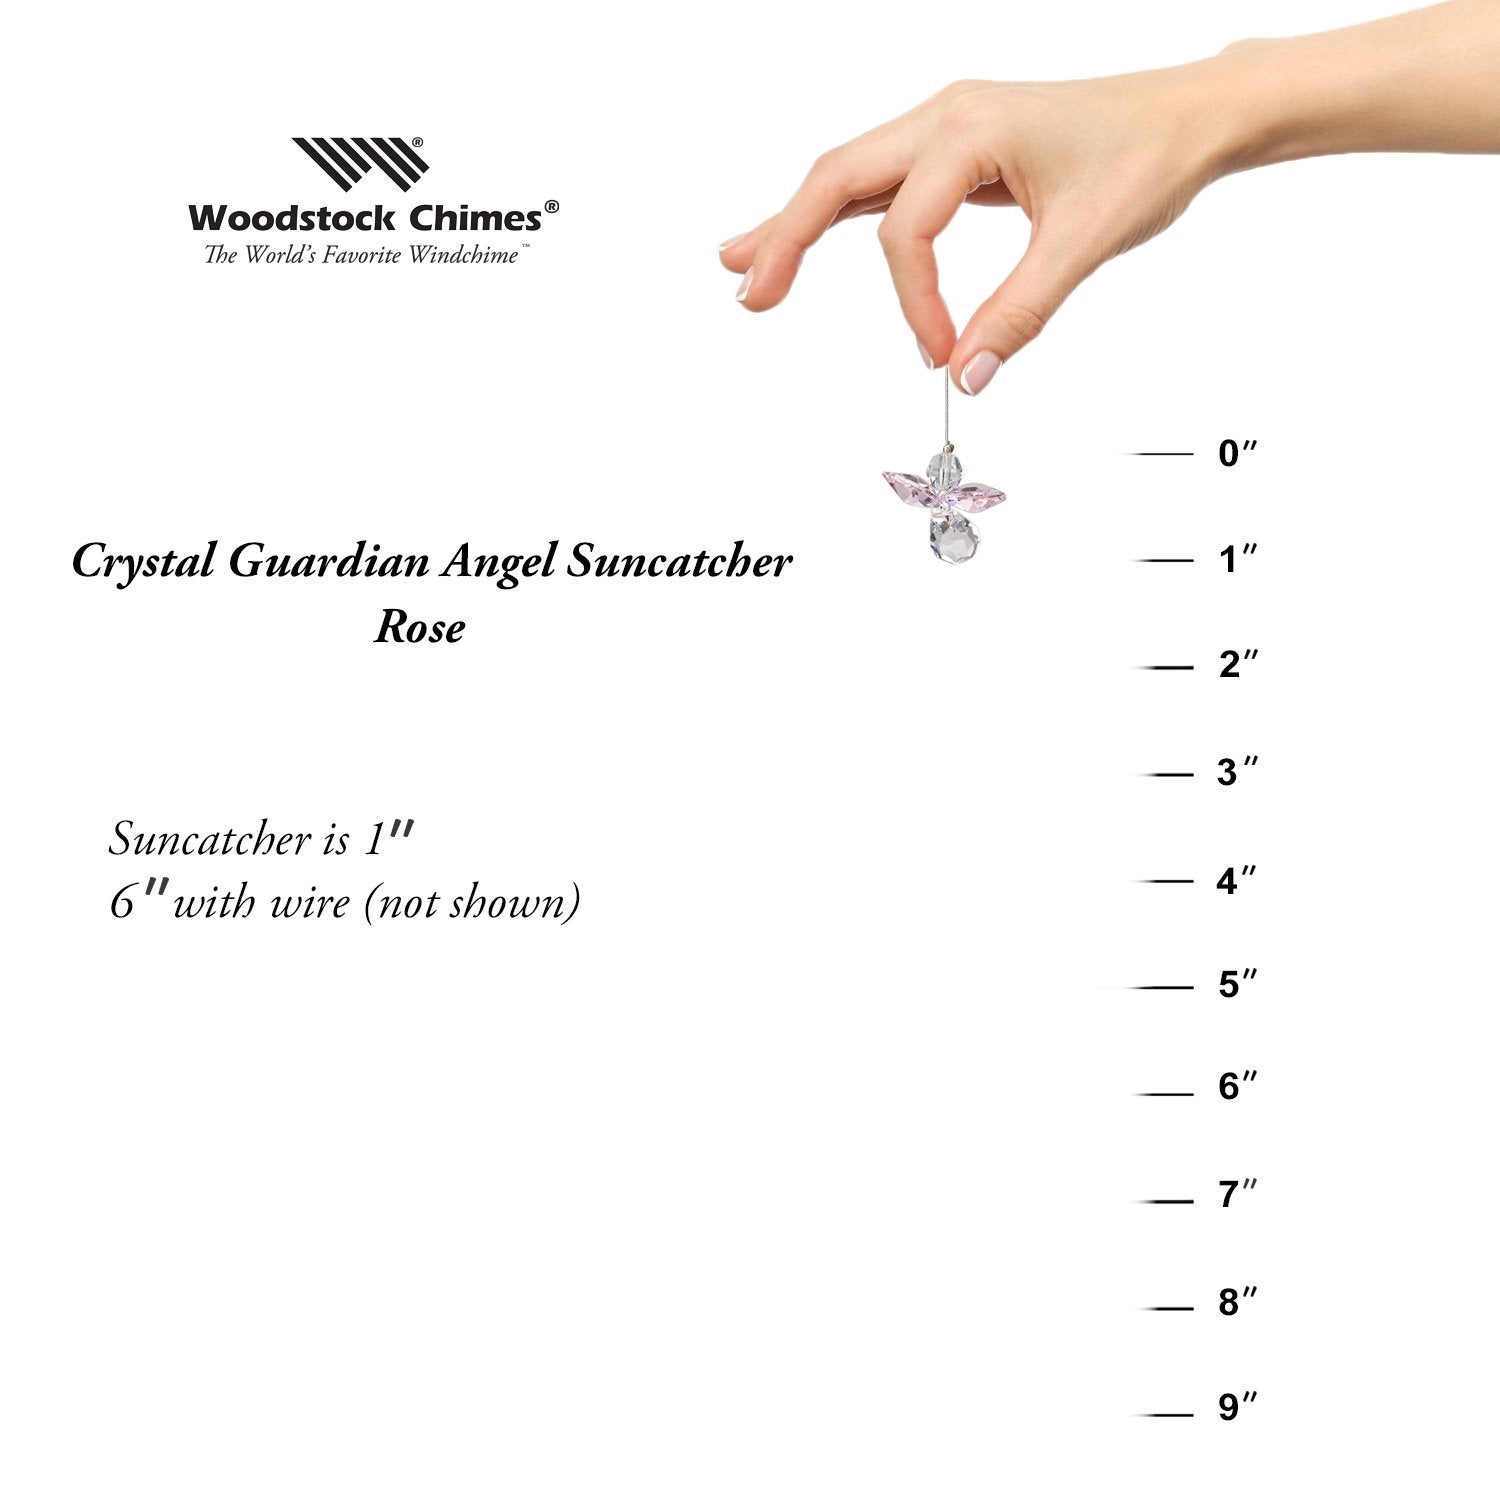 Crystal Guardian Angel Suncatcher - Rose (October) proportion image